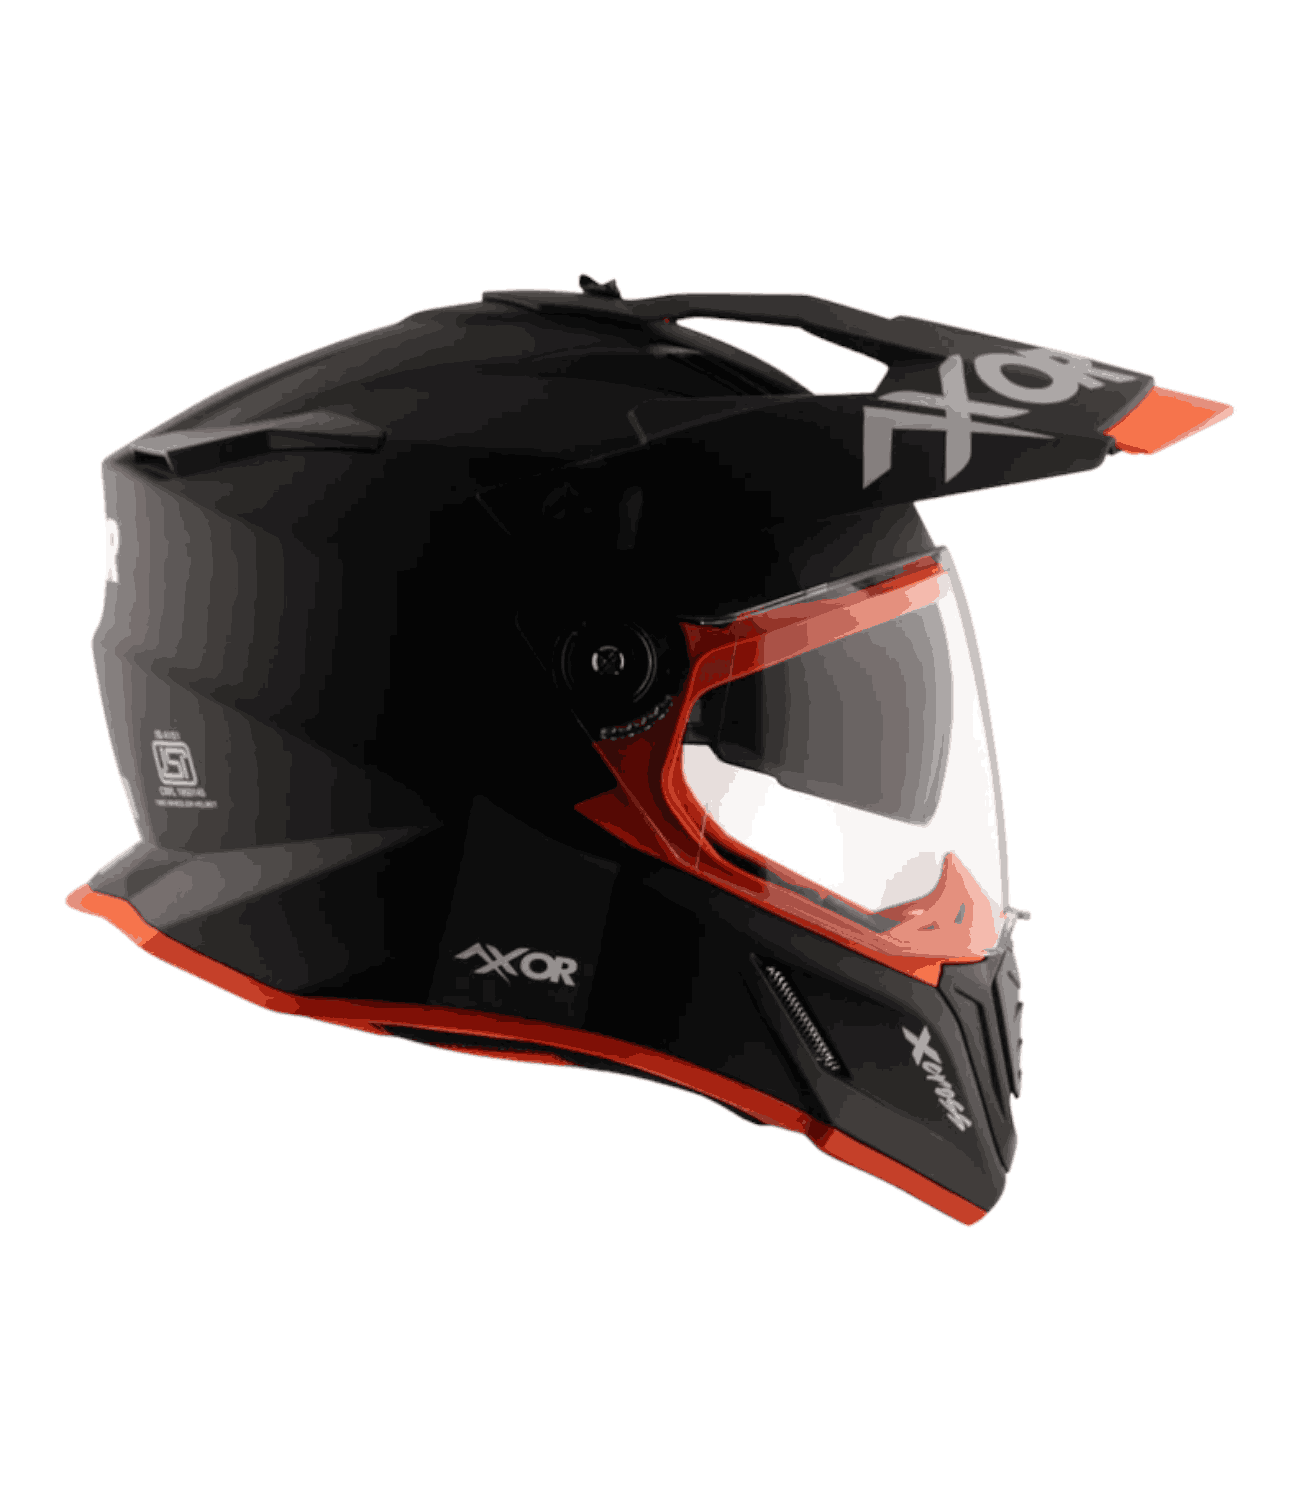 Axor X-Cross Dual Visor Helmet Dull Black Orange